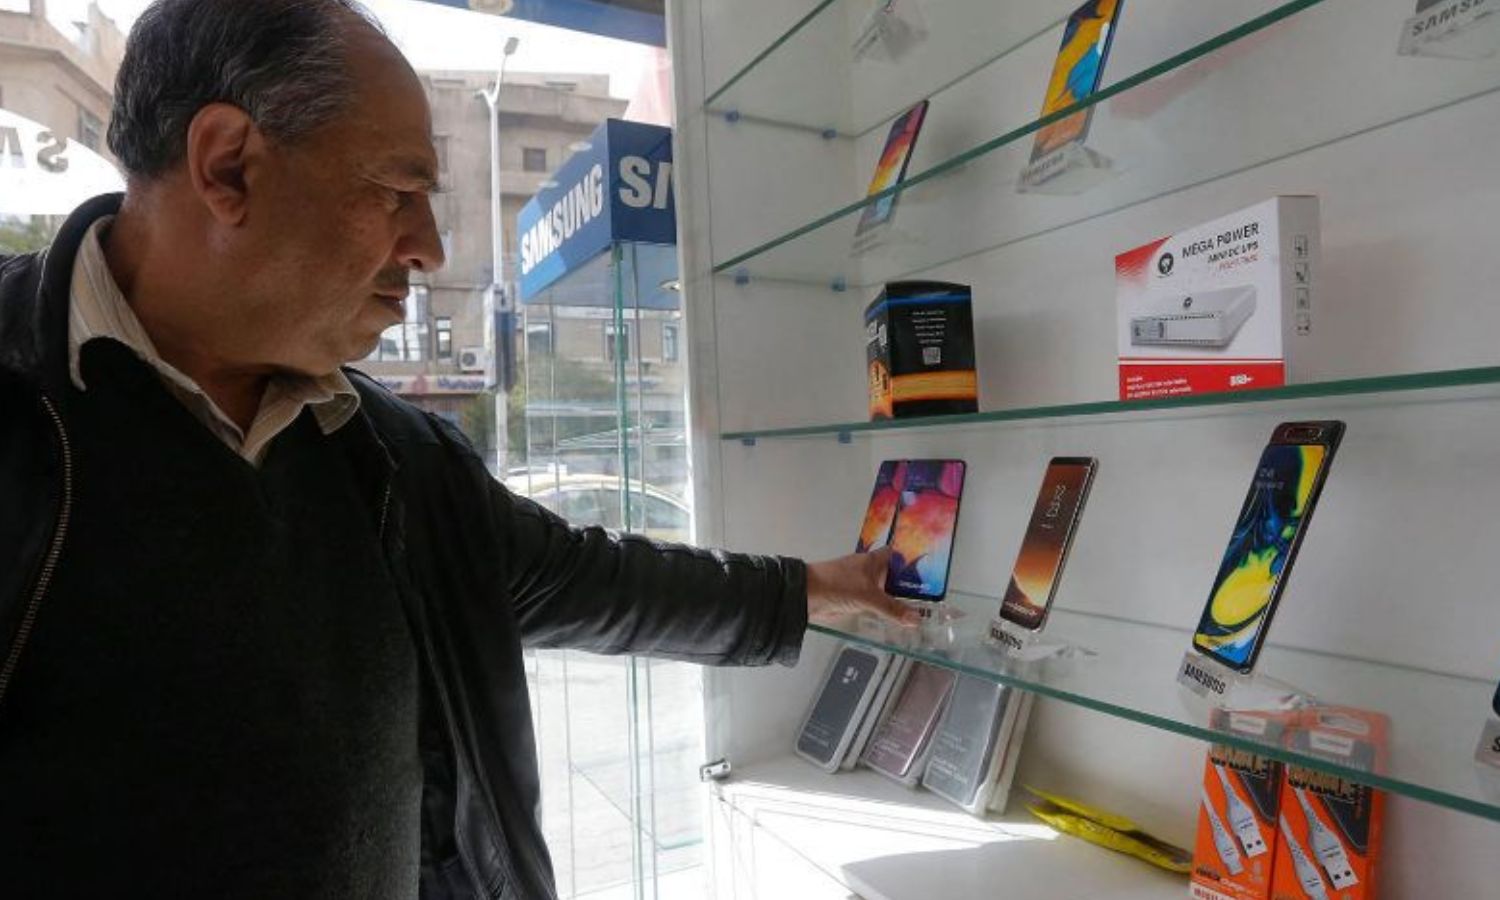 رجل يتفحص الهواتف المحمولة الذكية في محل هواتف بالعاصمة السورية - 24 من آذار 2021 (AFP)